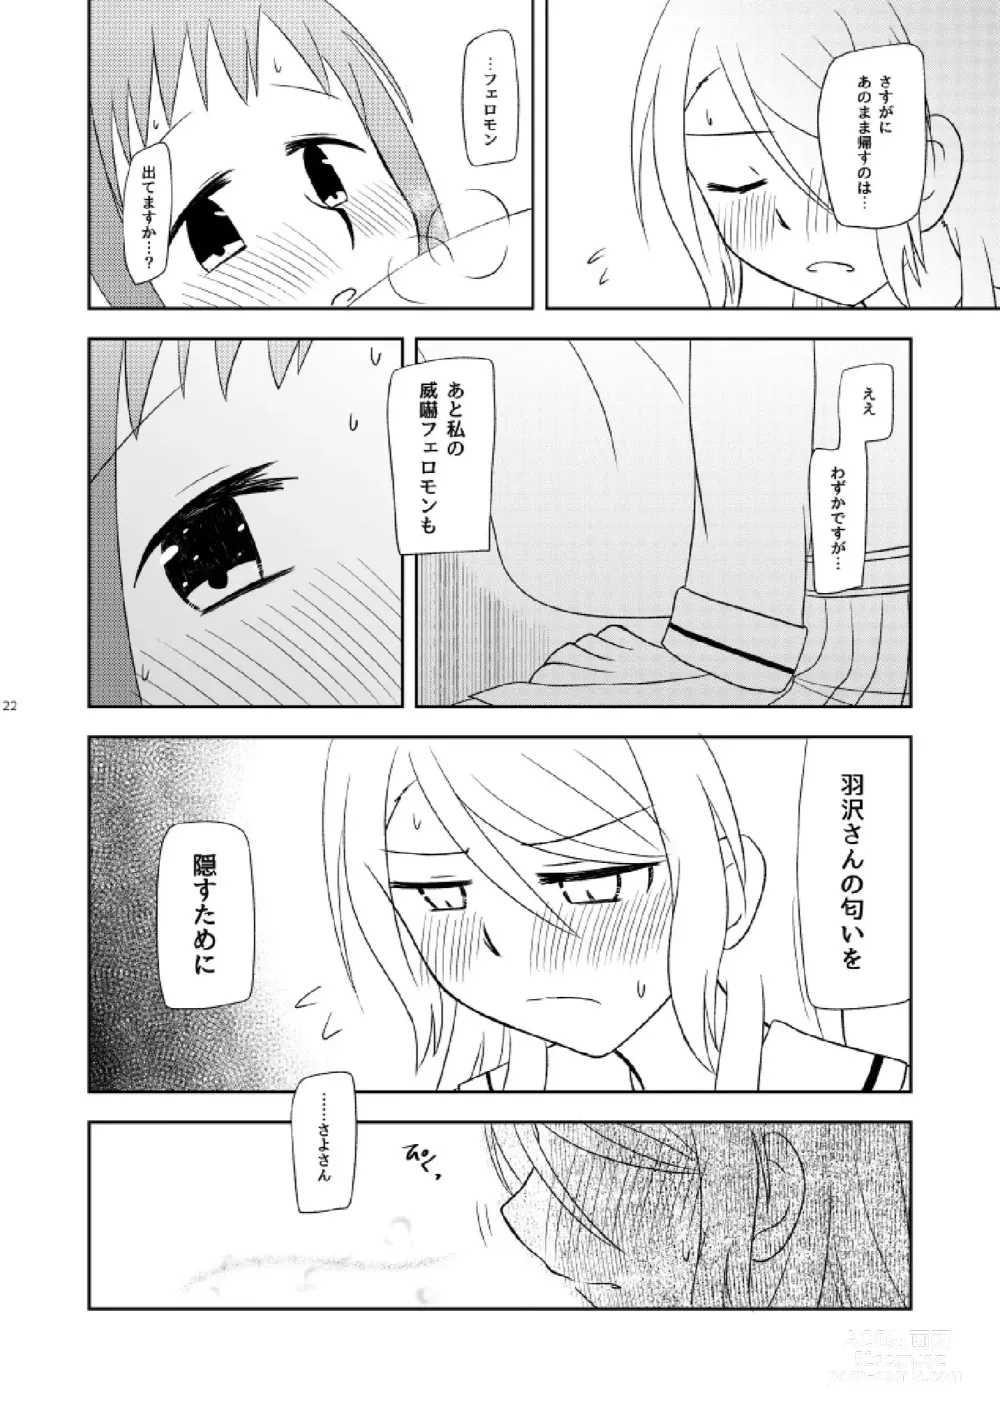 Page 24 of doujinshi Watashi Dake no